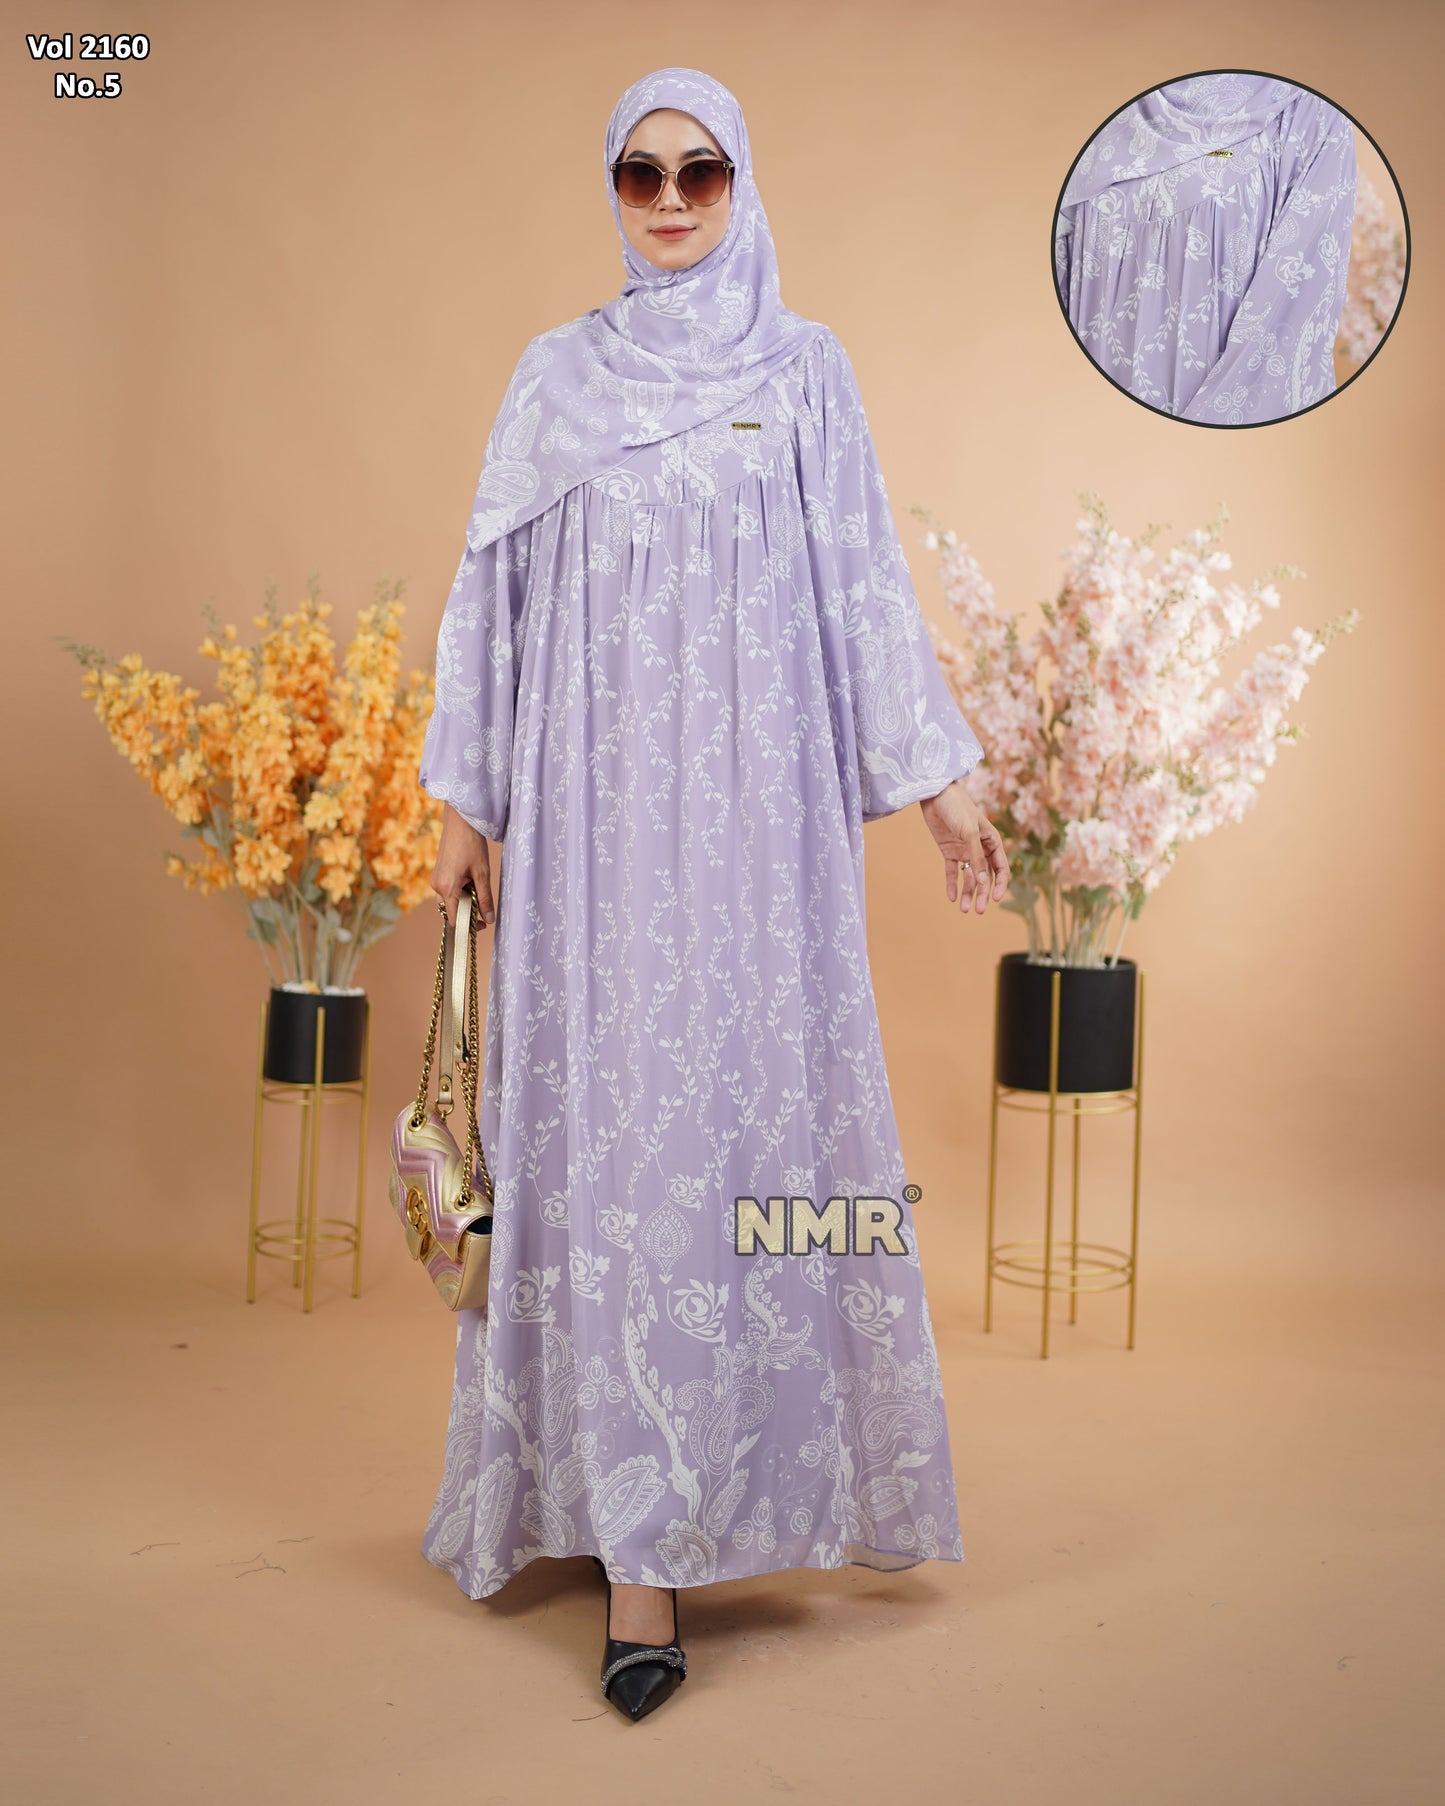 NMR Gamis Cerutty BabyDoll Premium Vol 2160-5 ( INC Hijab )